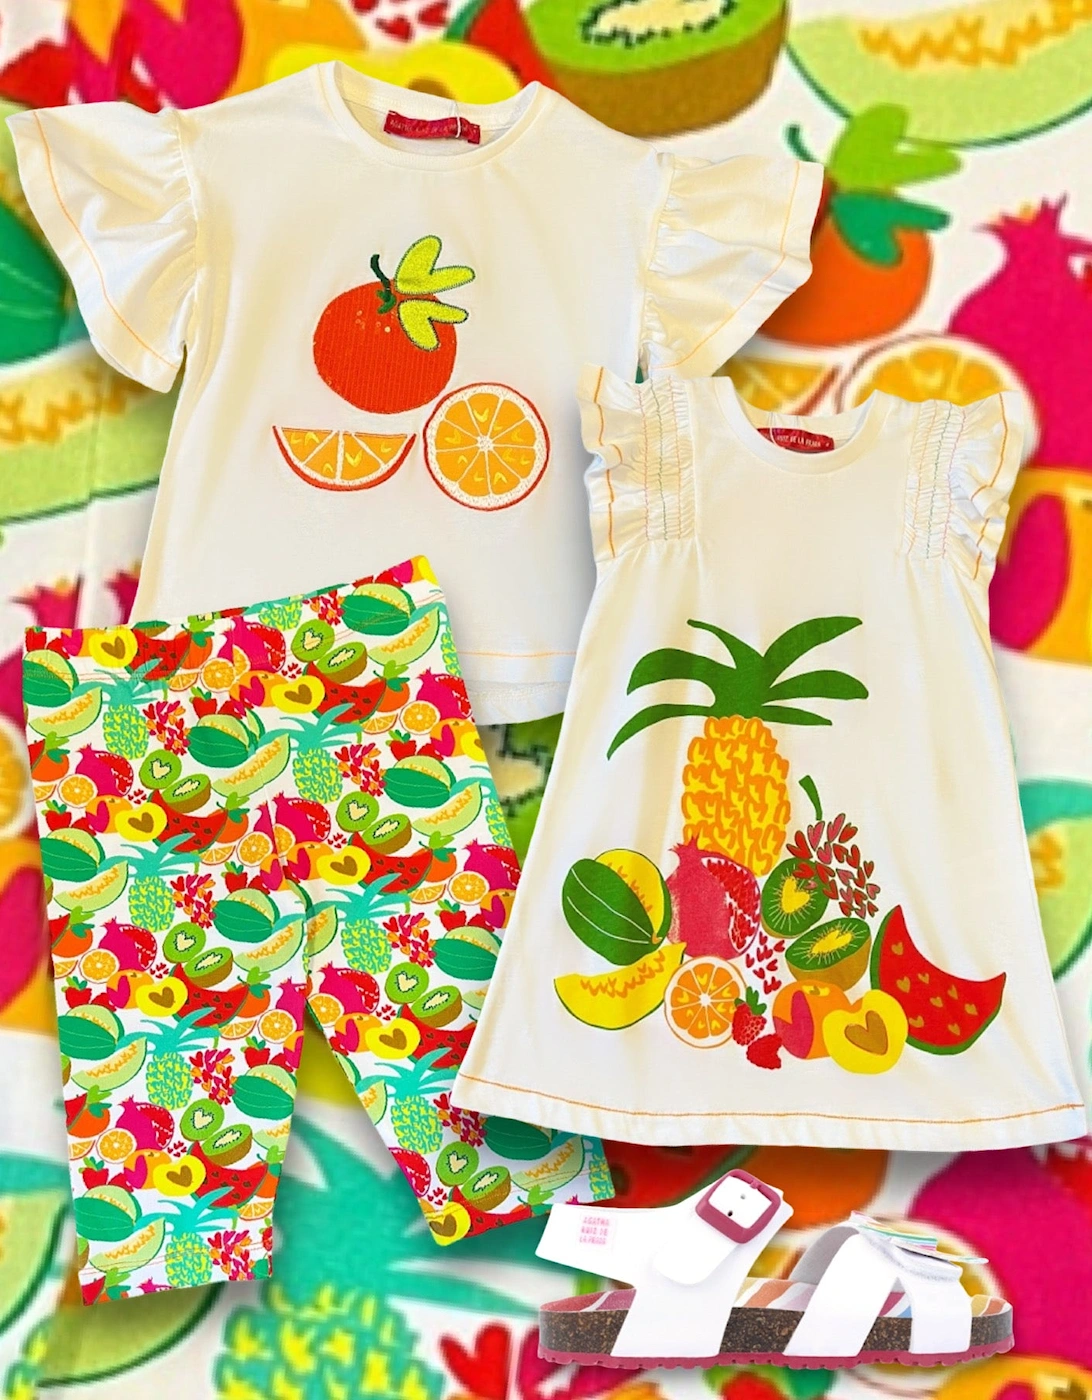 Multi Fruity Dress